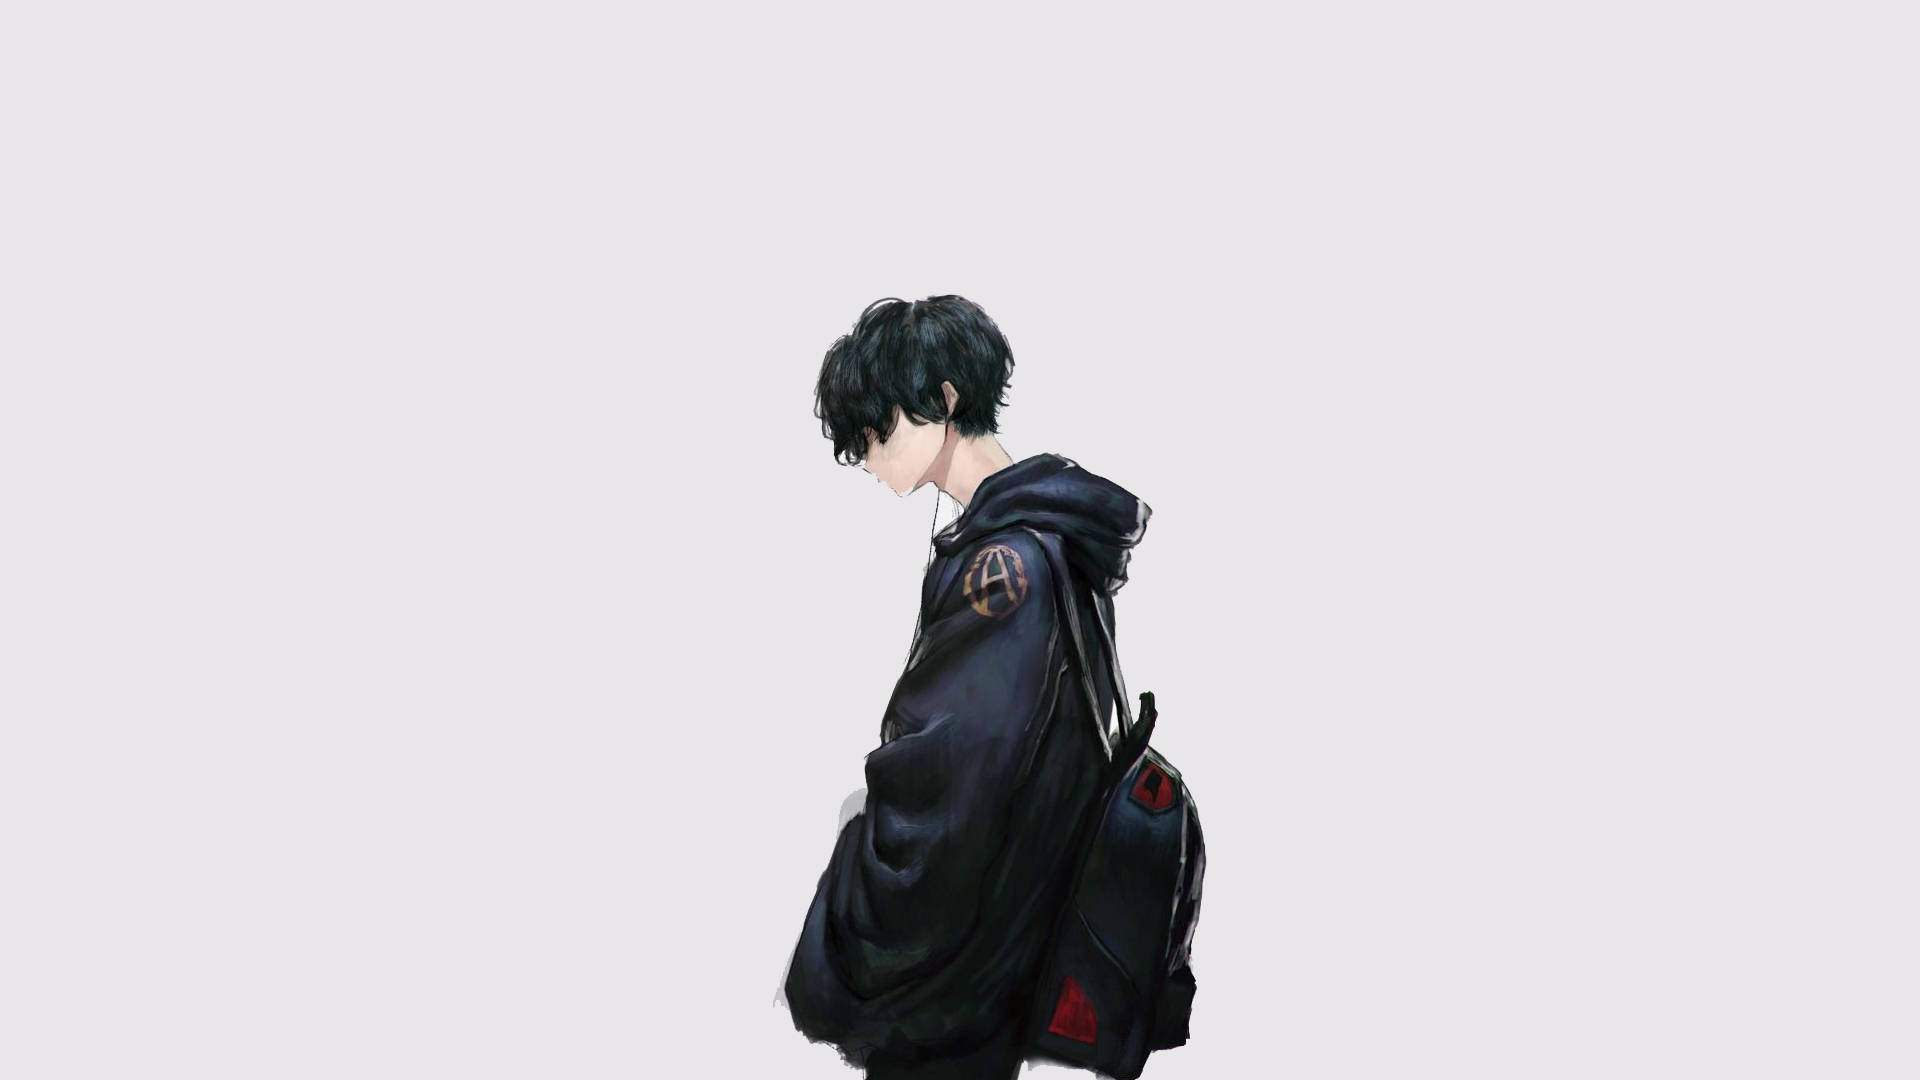 Sad Anime Boy Aesthetic Jacket Background